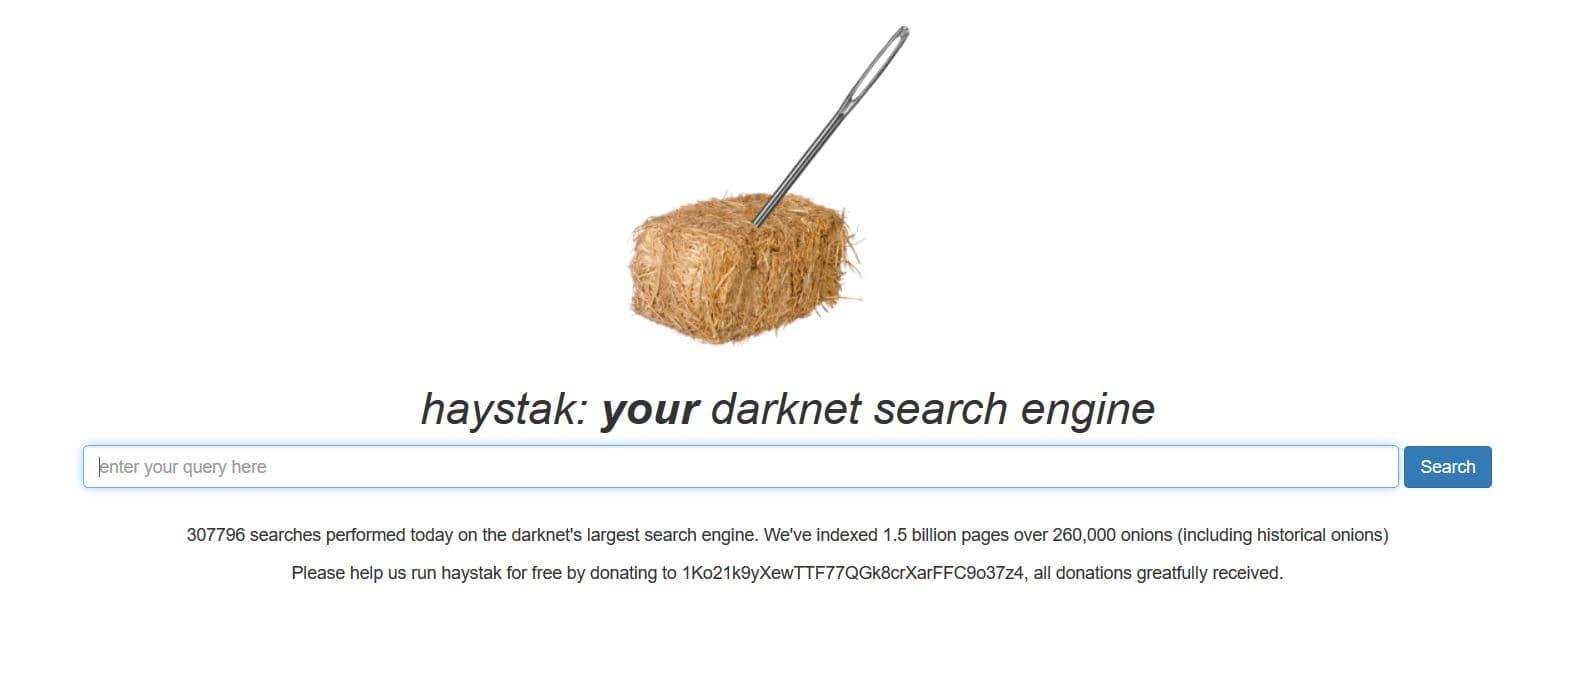 buscador haystak darknet